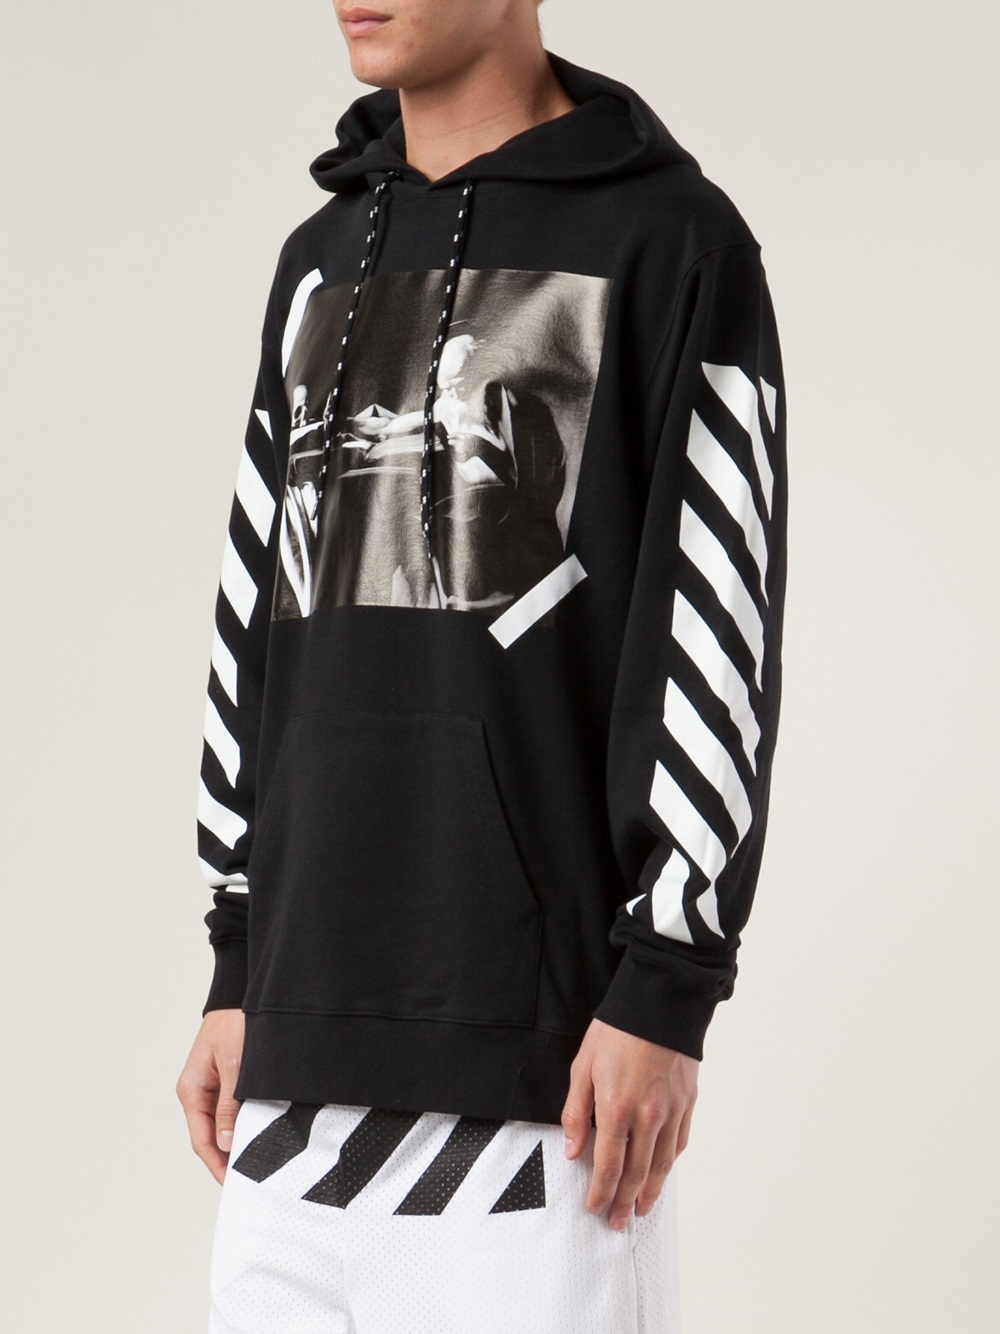 Off-white c/o virgil abloh Hooded Sweatshirt in Black for Men | Lyst